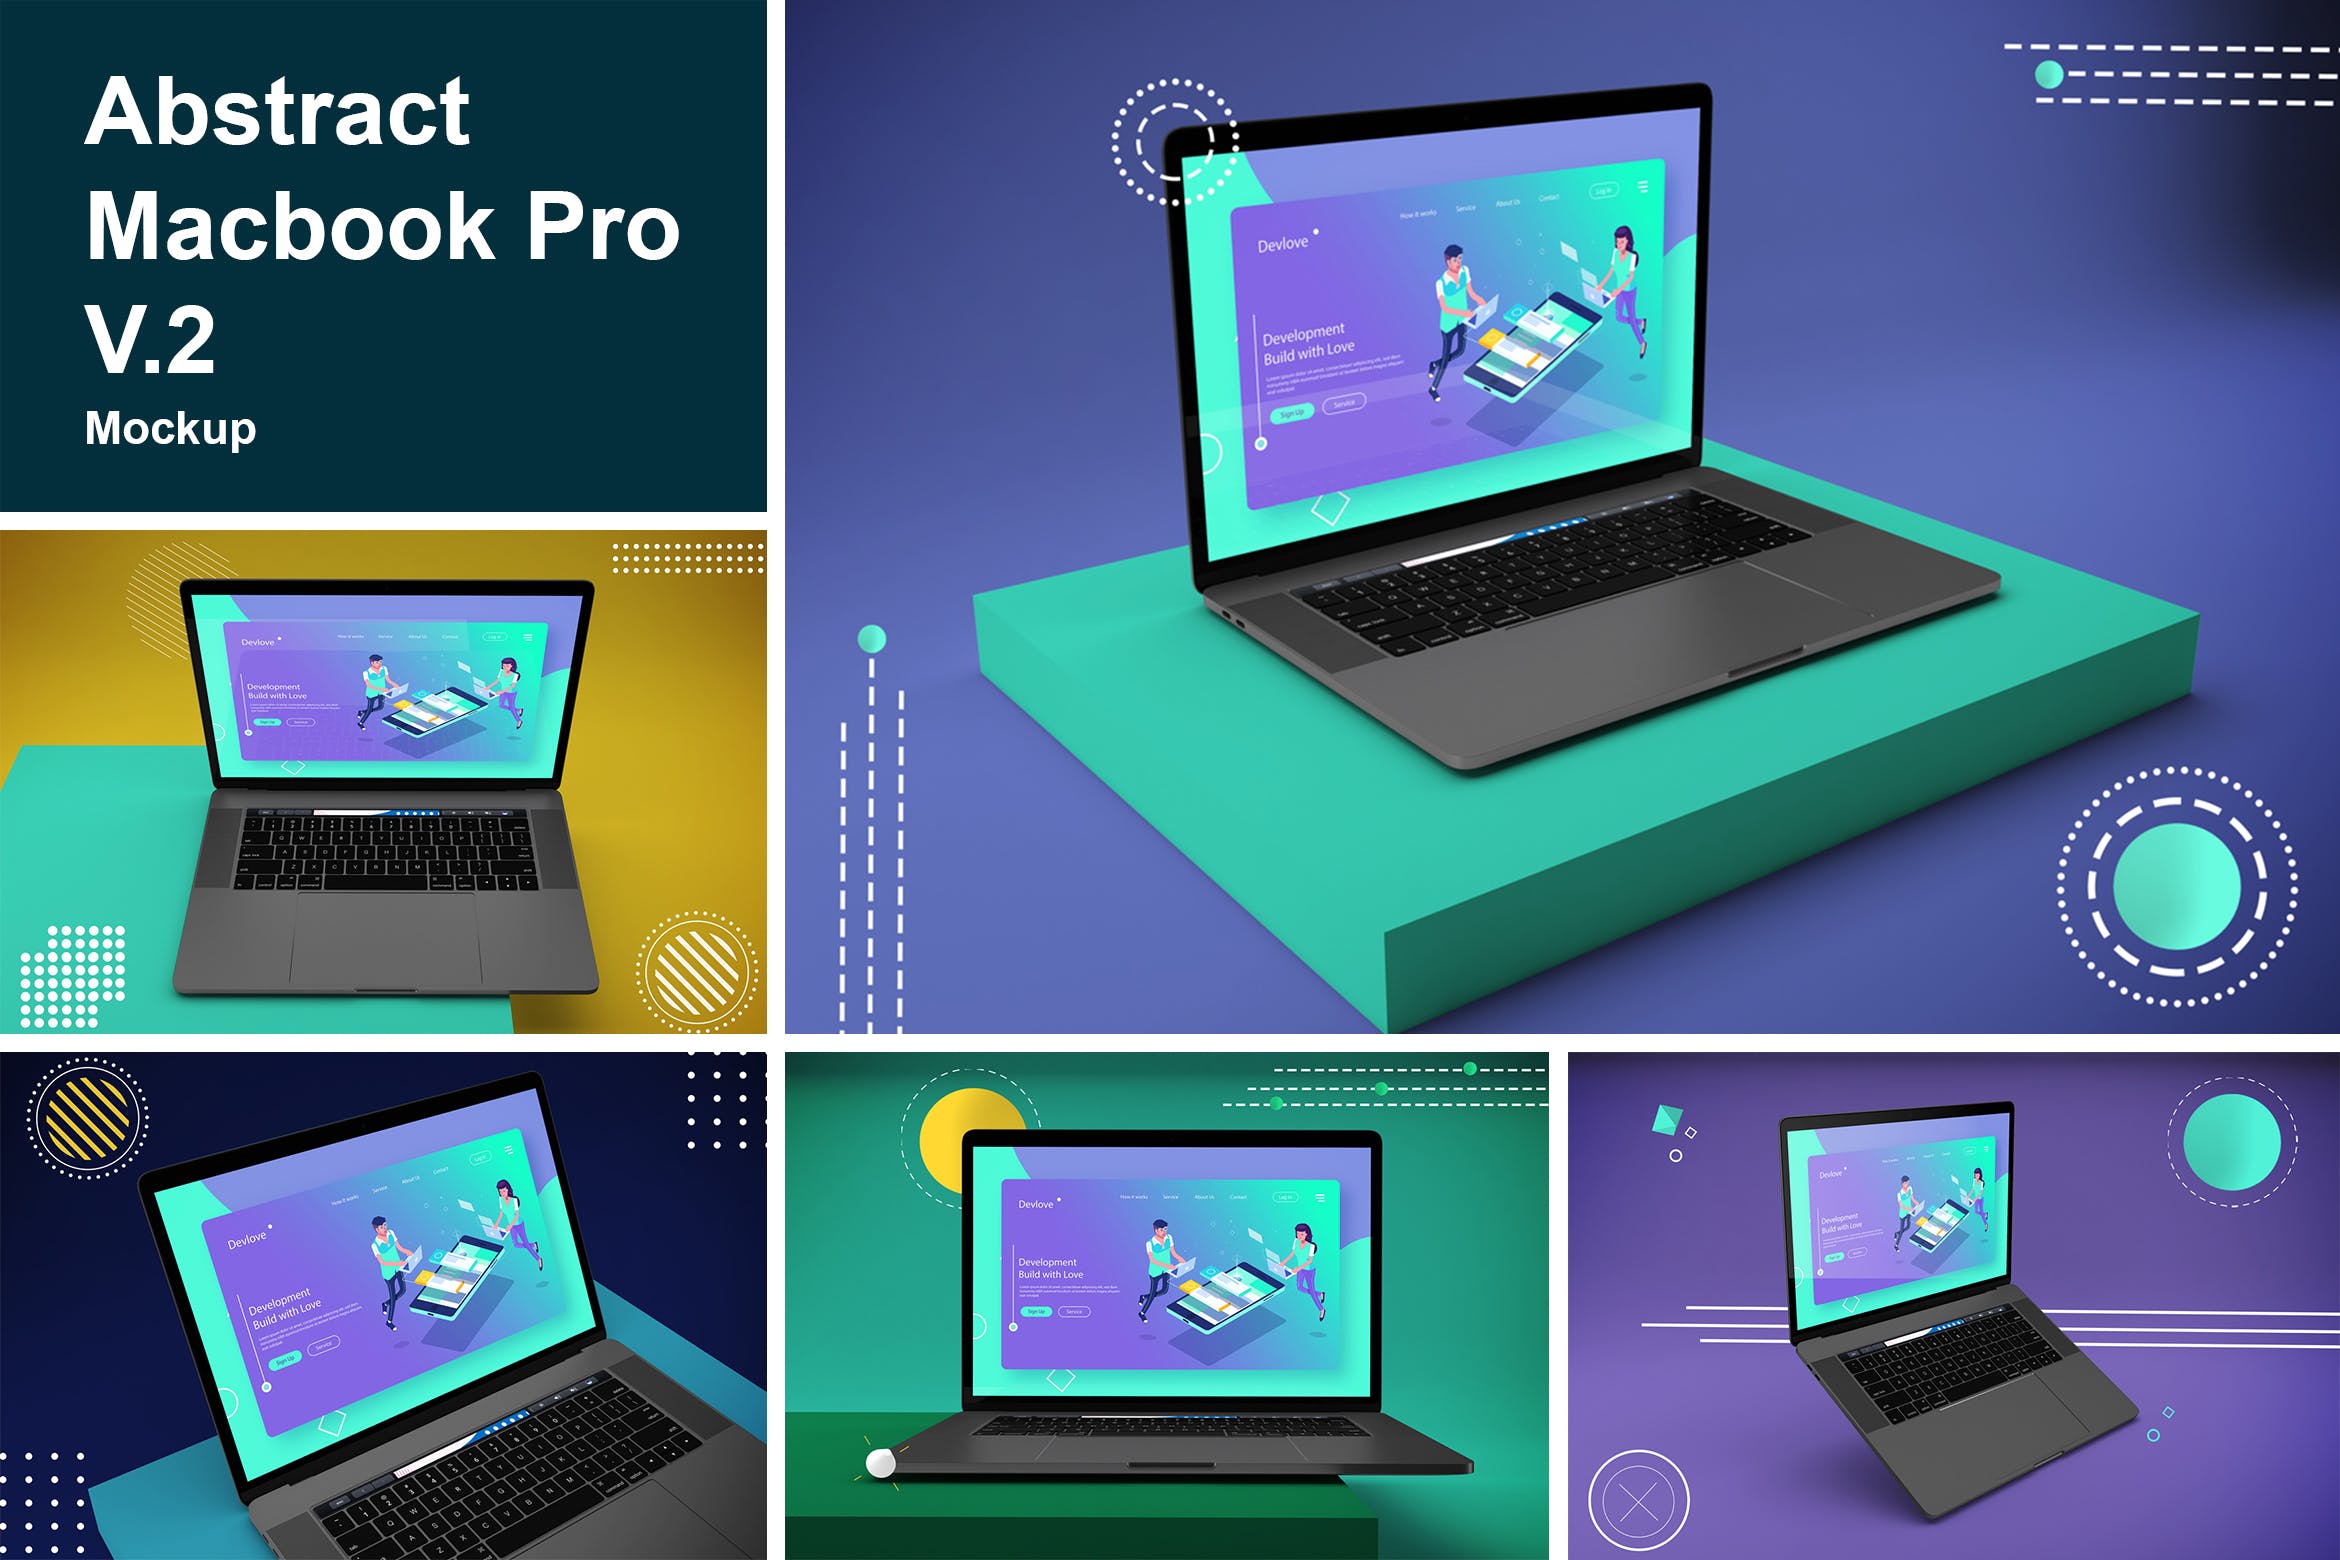 抽象背景Macbook Pro笔记本电脑第一素材精选样机模板v2 Abstract Macbook Pro Mockup V.2插图